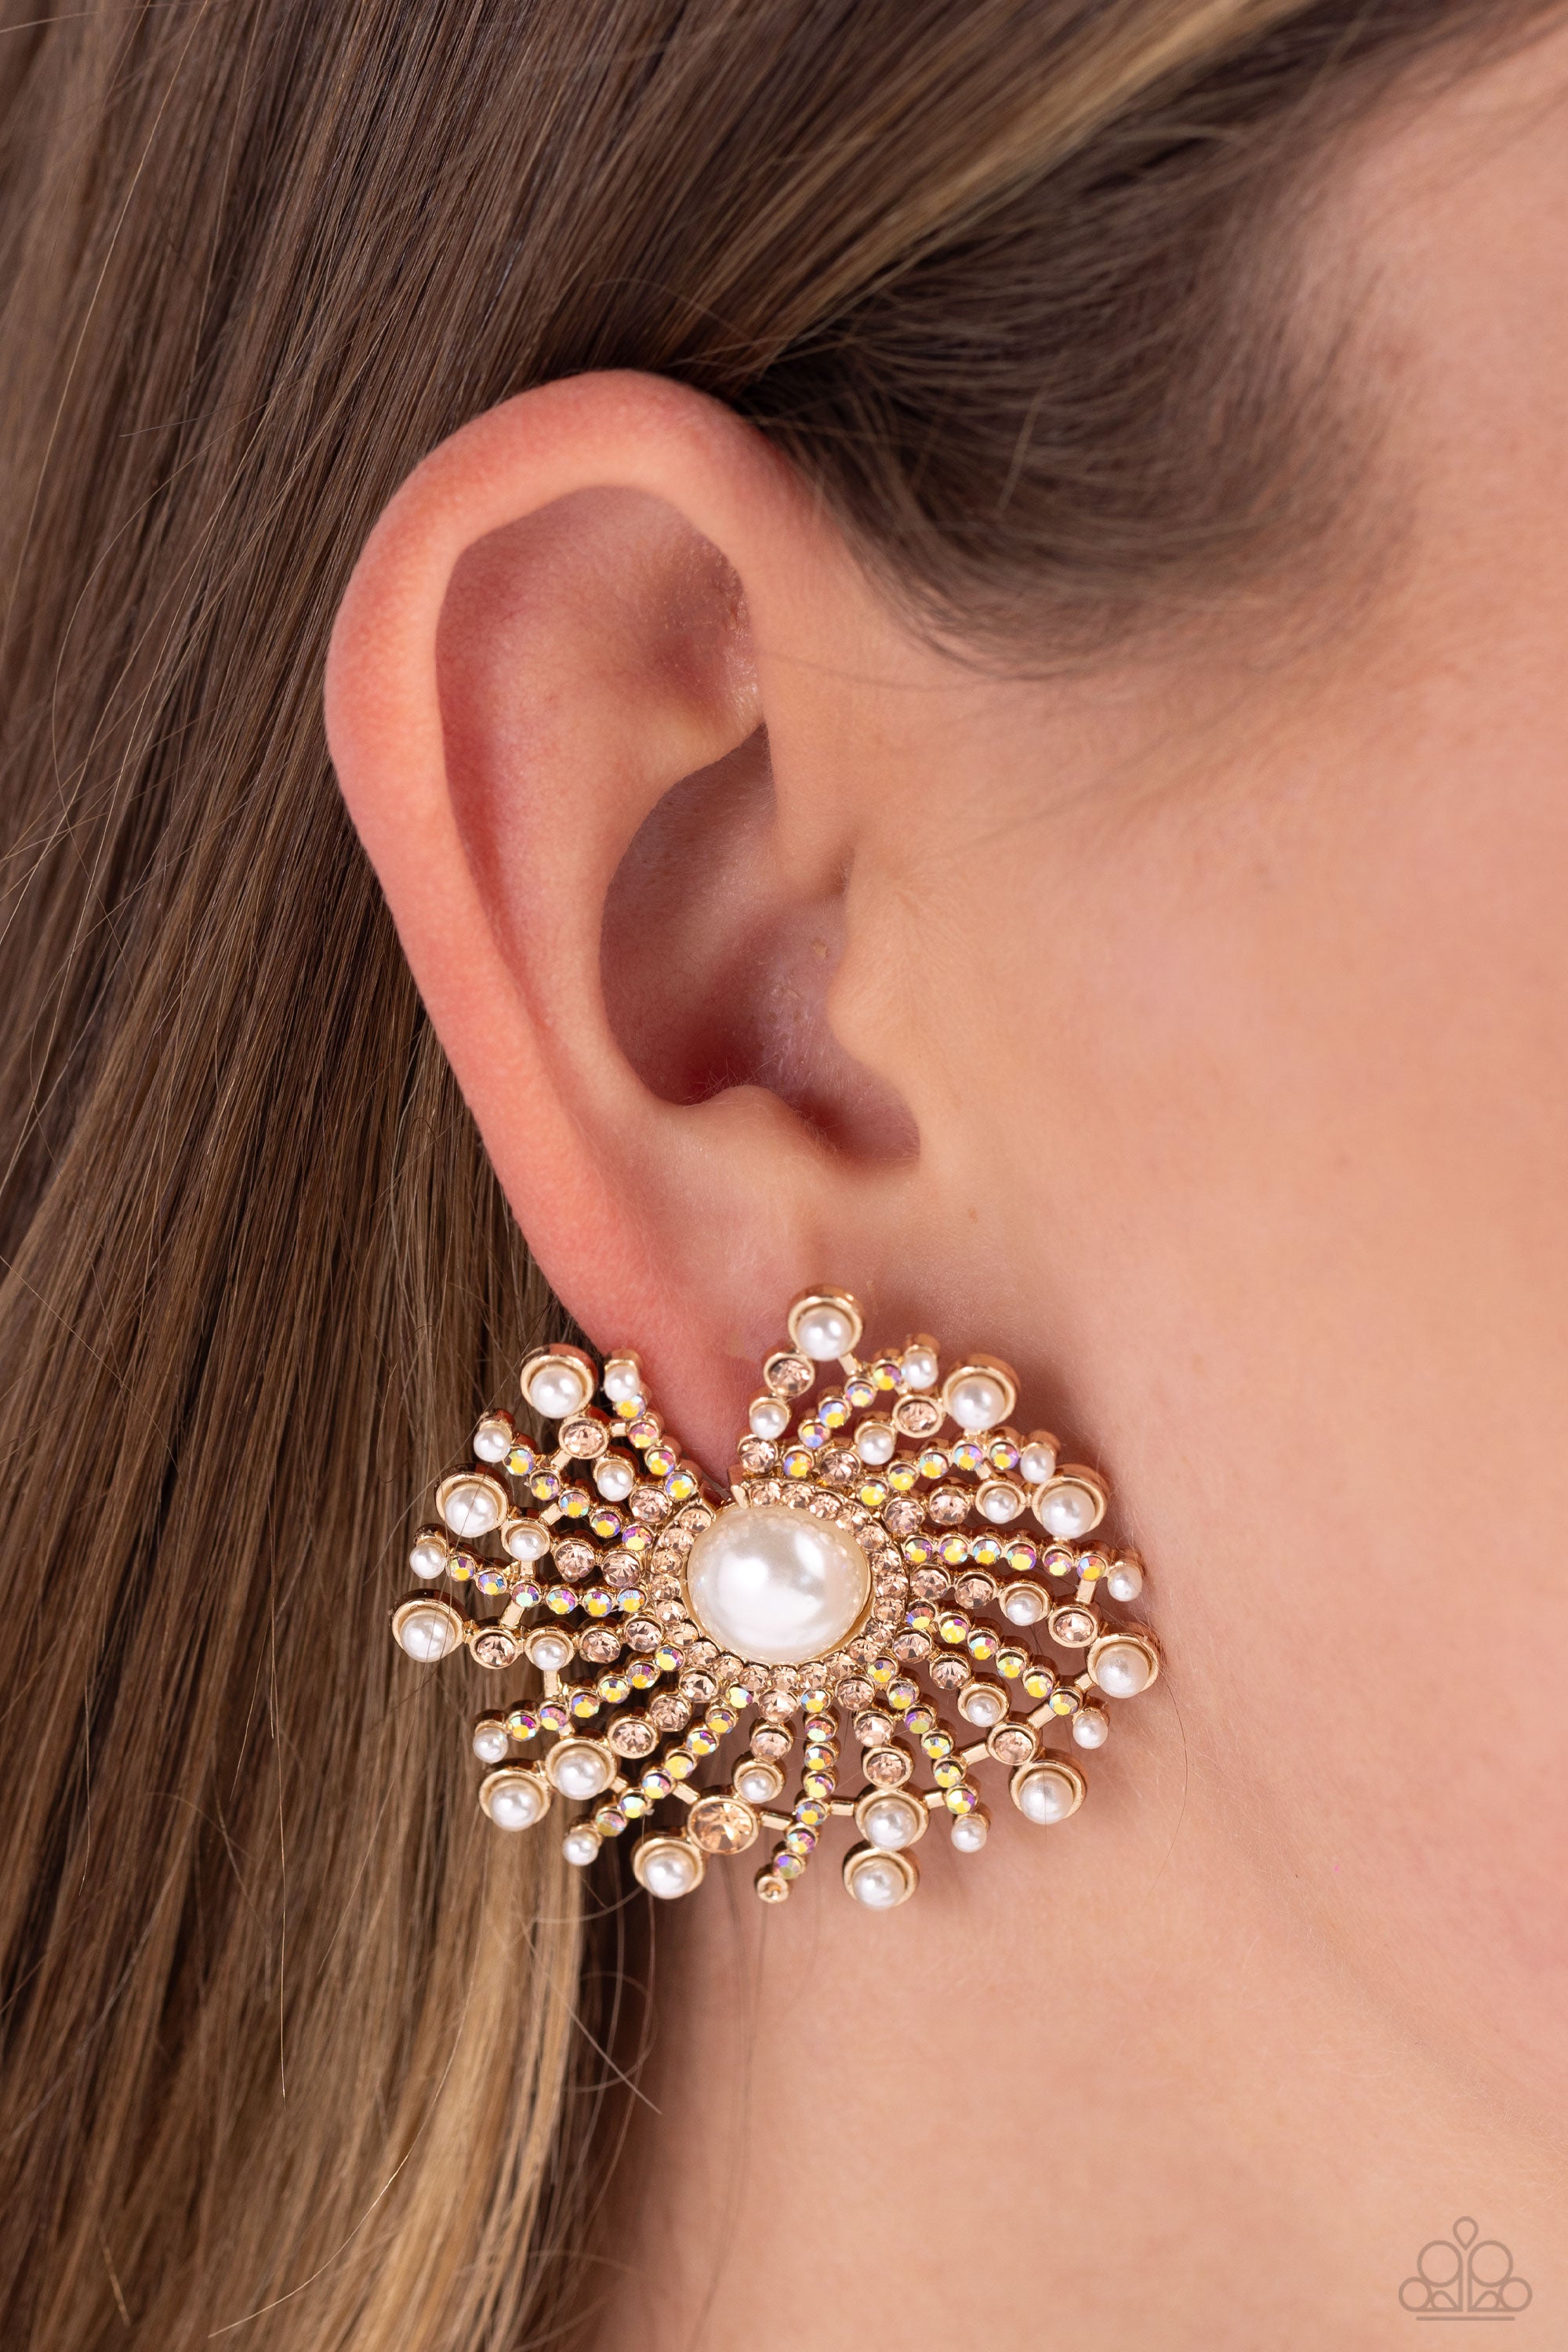 Fancy golden earring designs